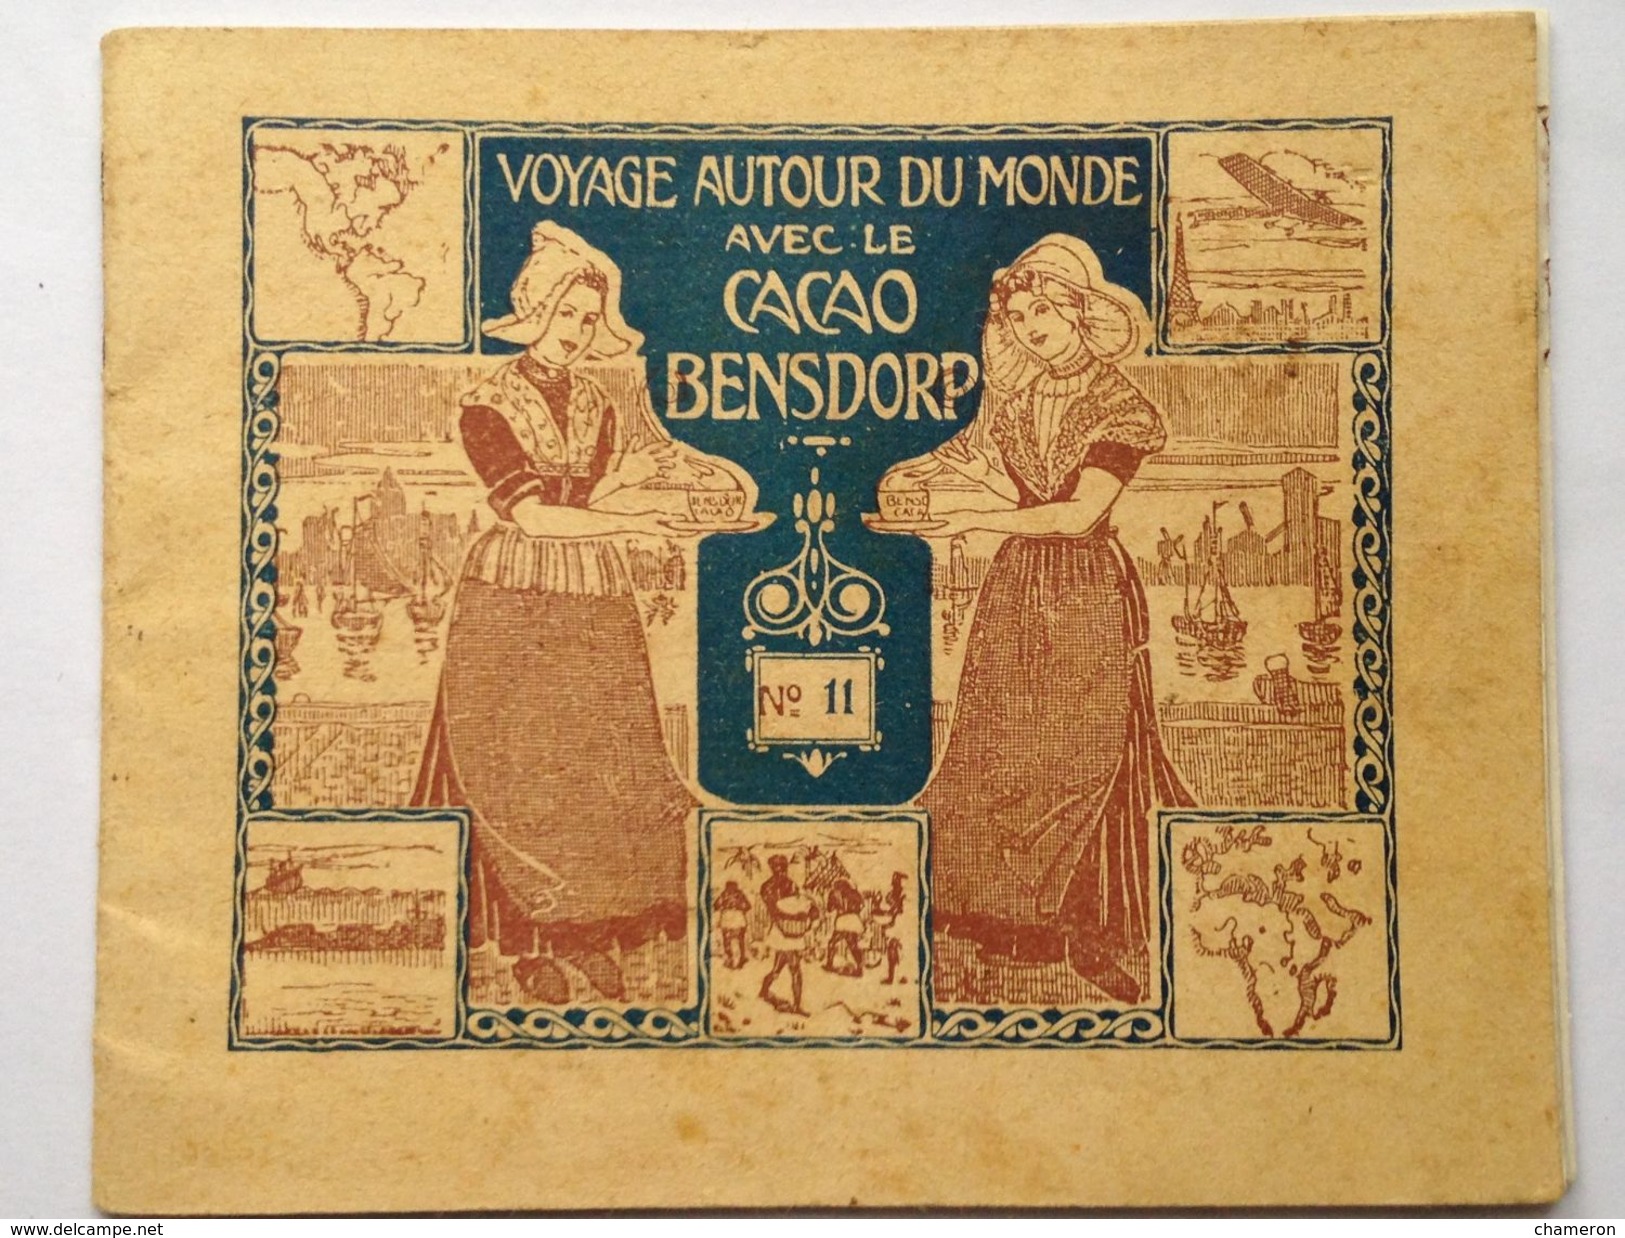 CACAO BENSDORP, Voyage Autour Du Monde : Album N° 11, MOSCOU - Colecciones